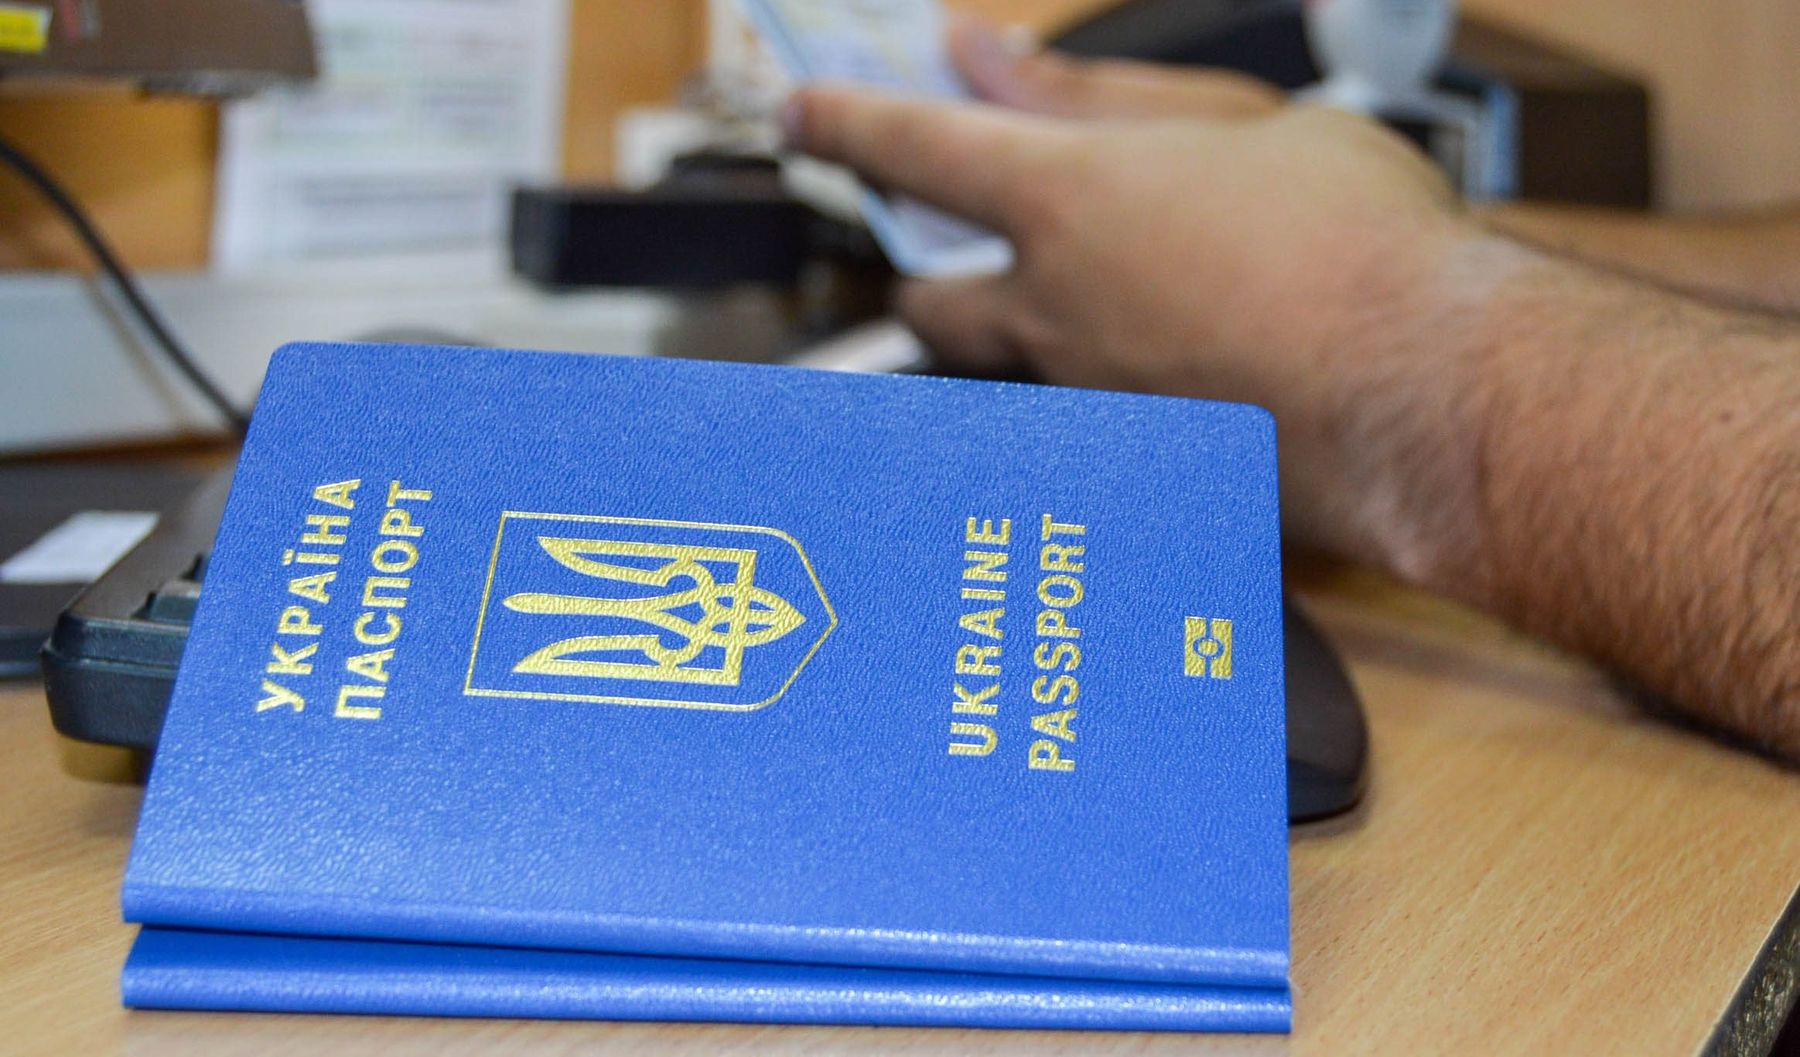 Украина опустилась в рейтинге паспортов